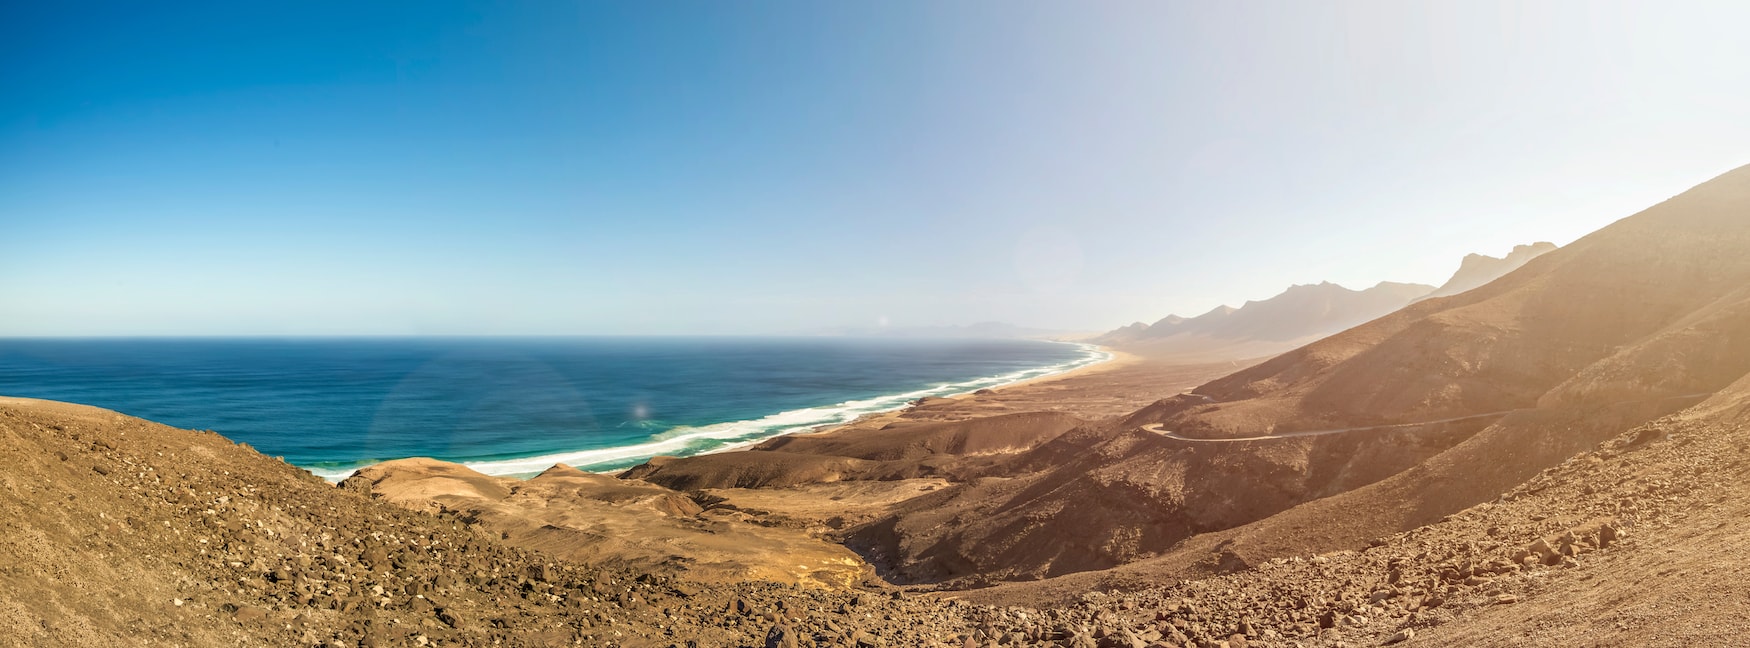 Panorama-Aufnahme des Playa de Cofete auf Fuerteventura